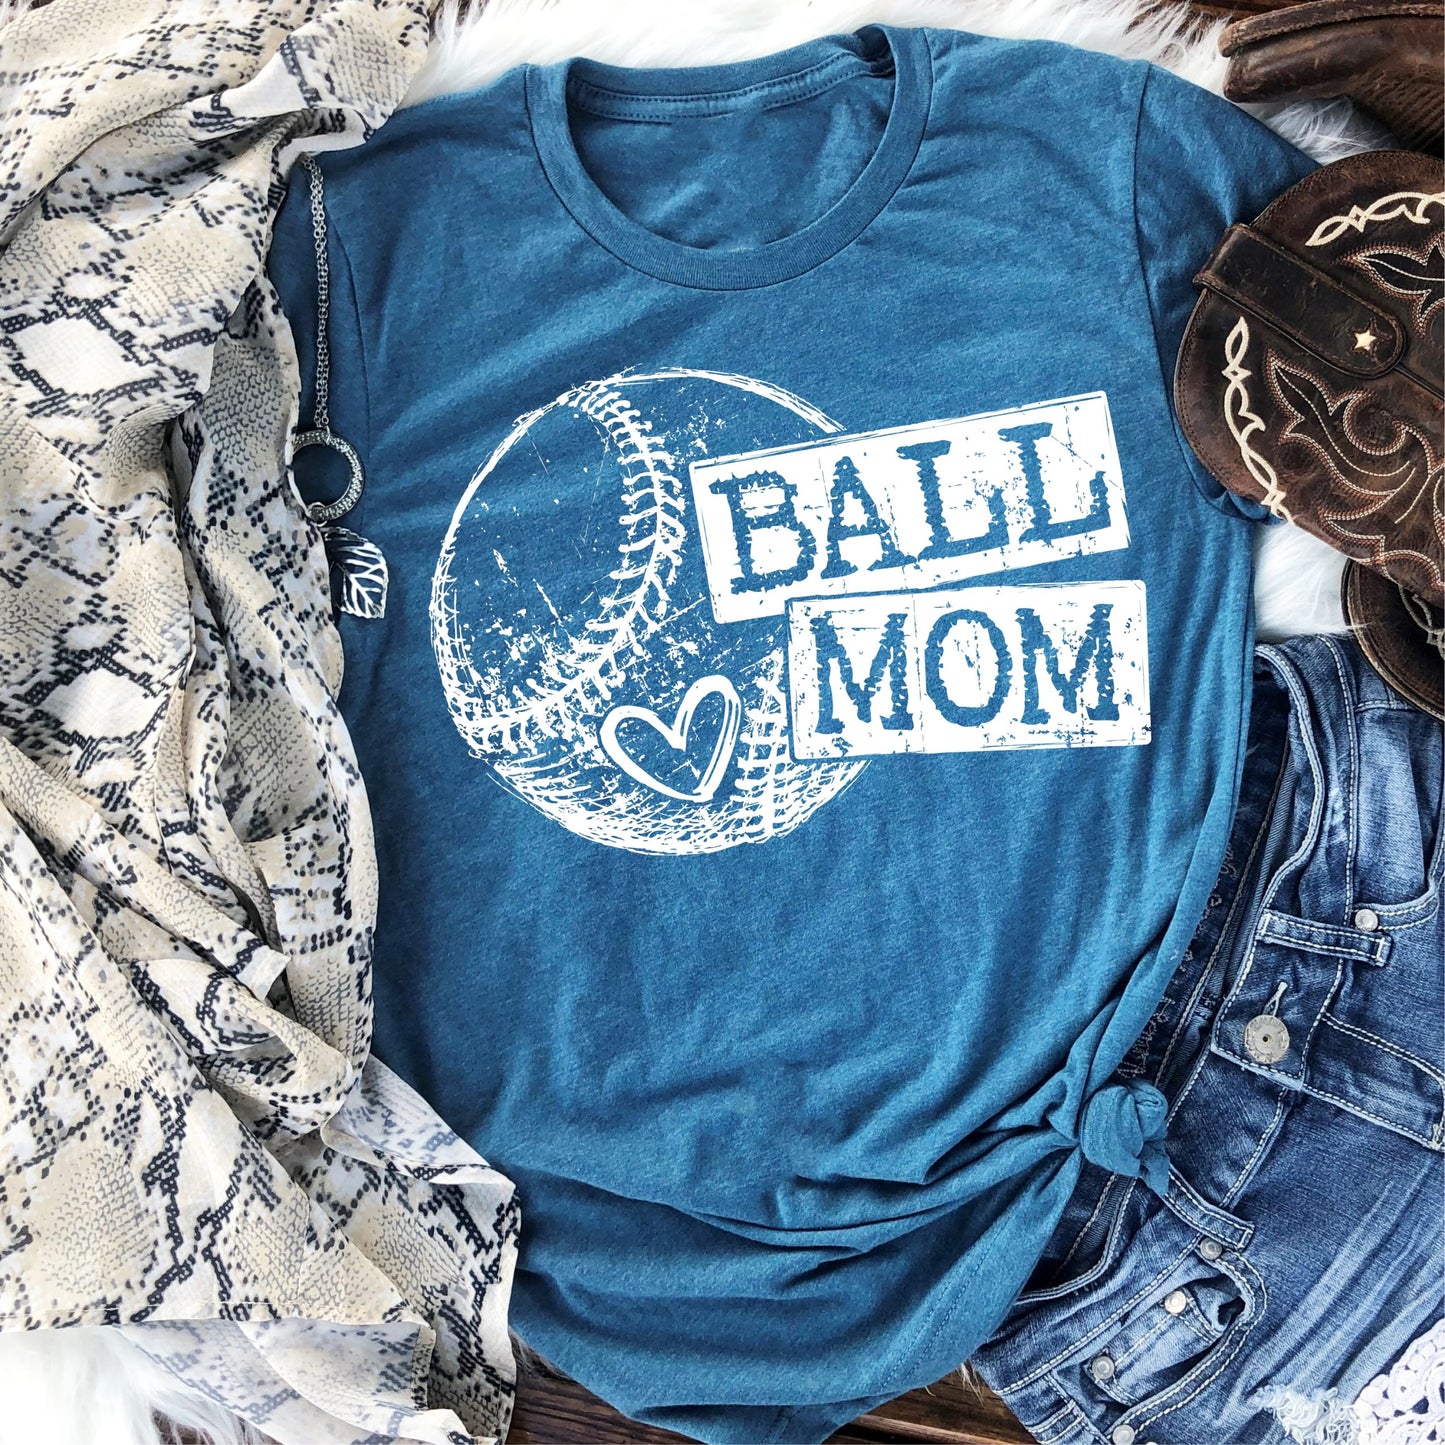 Ball mom baseball